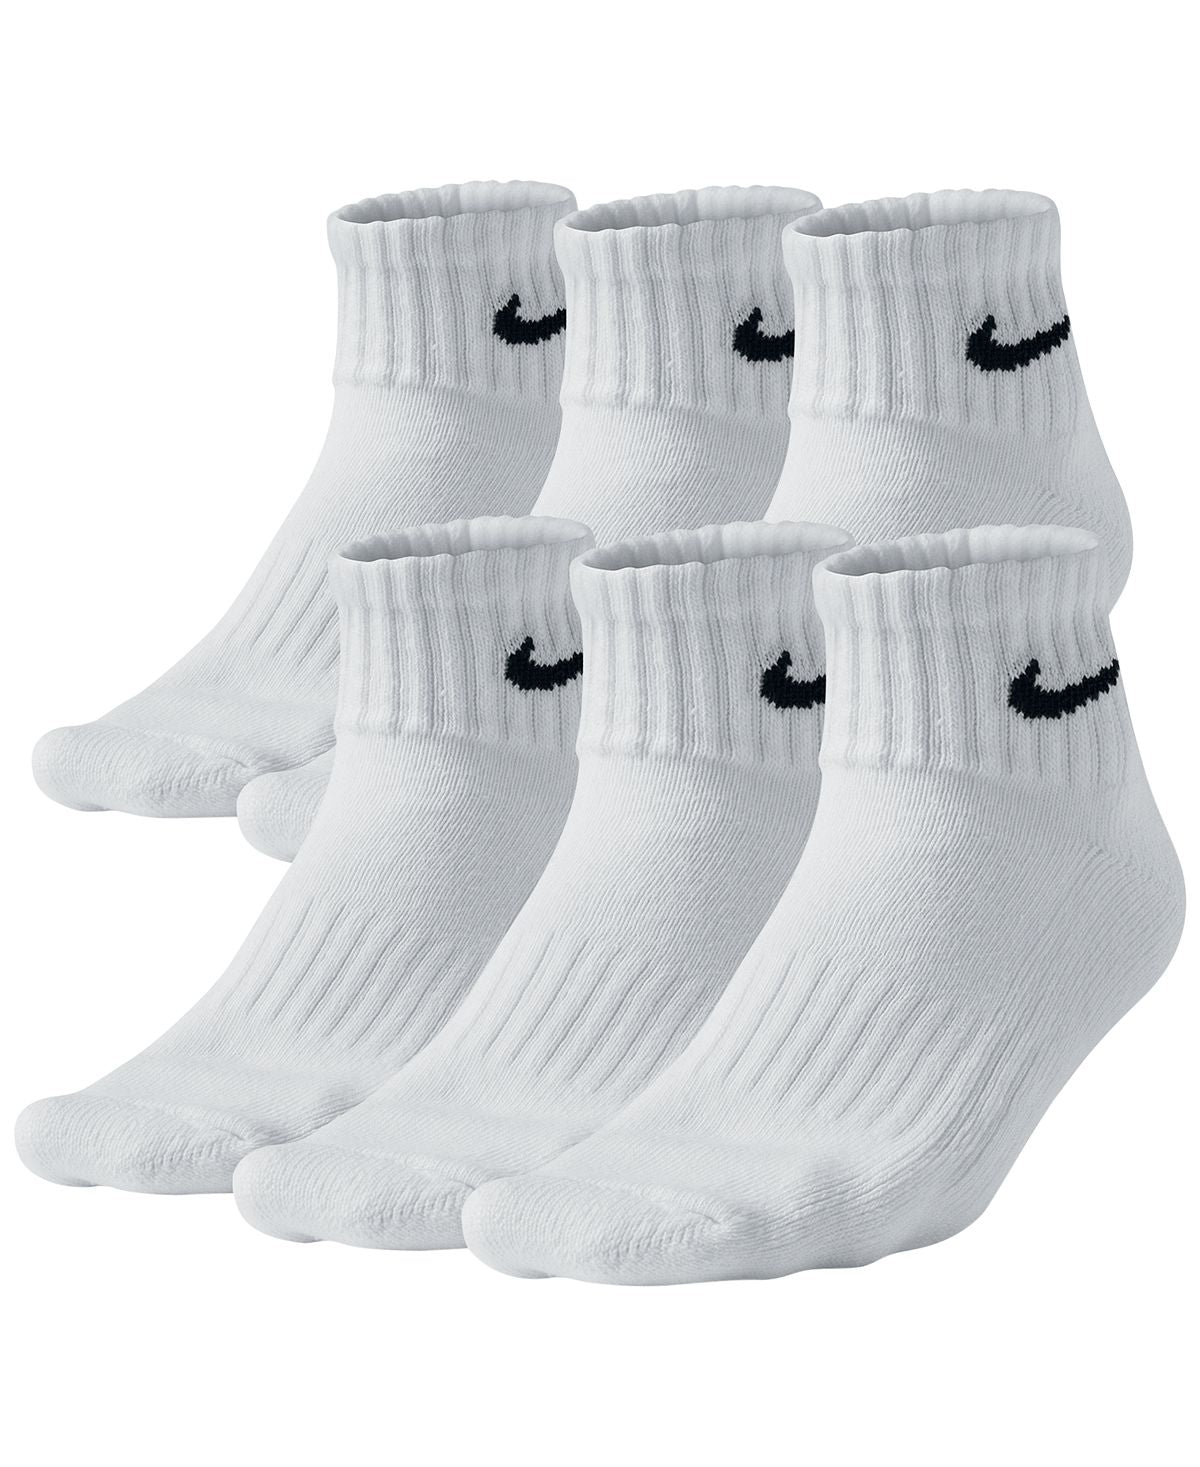 Nike Cotton Quarter Socks 6-pack White